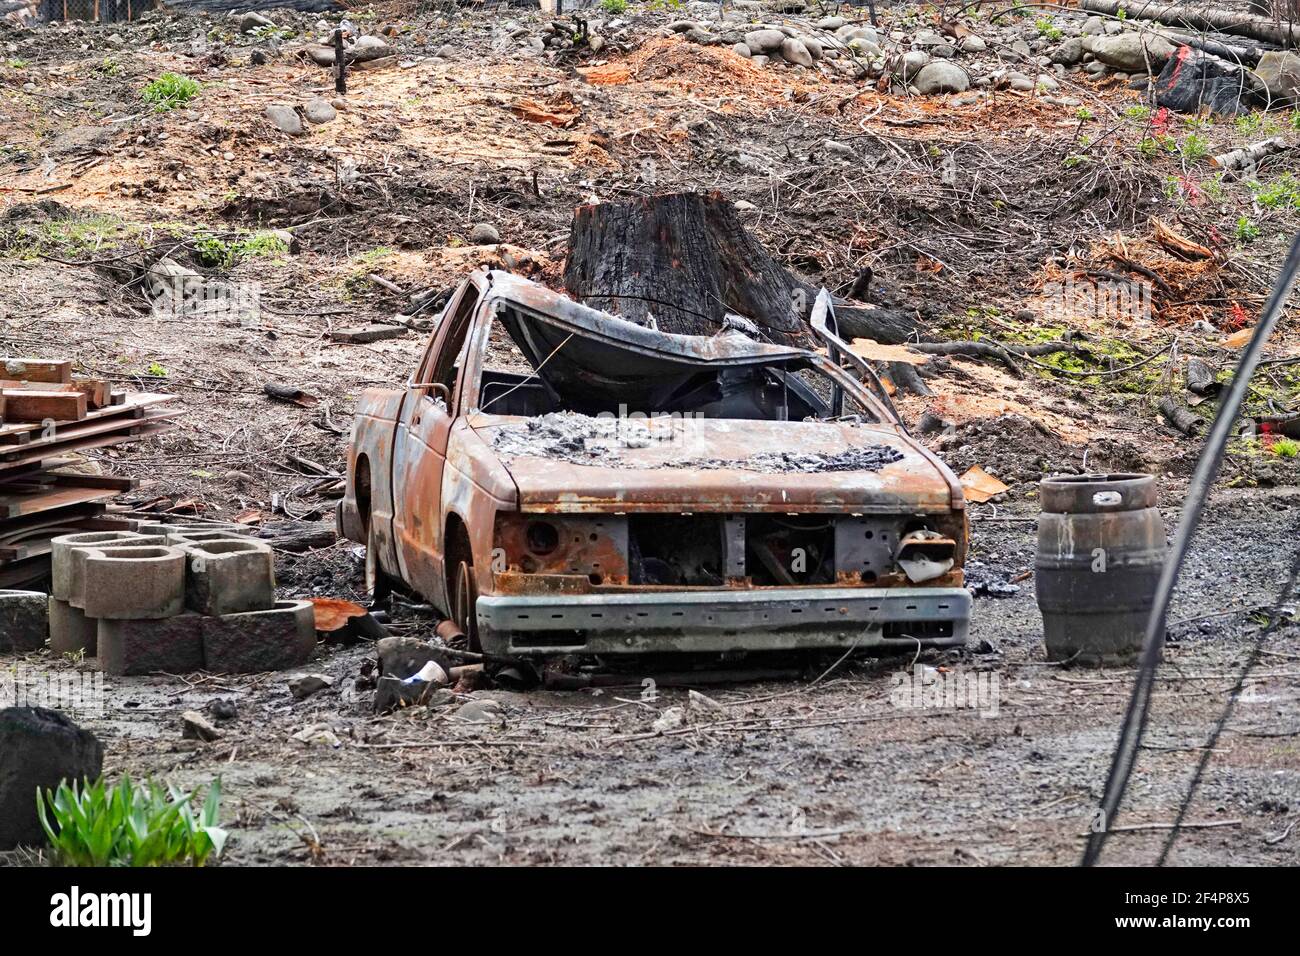 Los restos carbonizados de la pequeña aldea de Blue River, Oregón, después del incendio del bosque Holiday Farm que arrasó el valle del río McKenzie Foto de stock